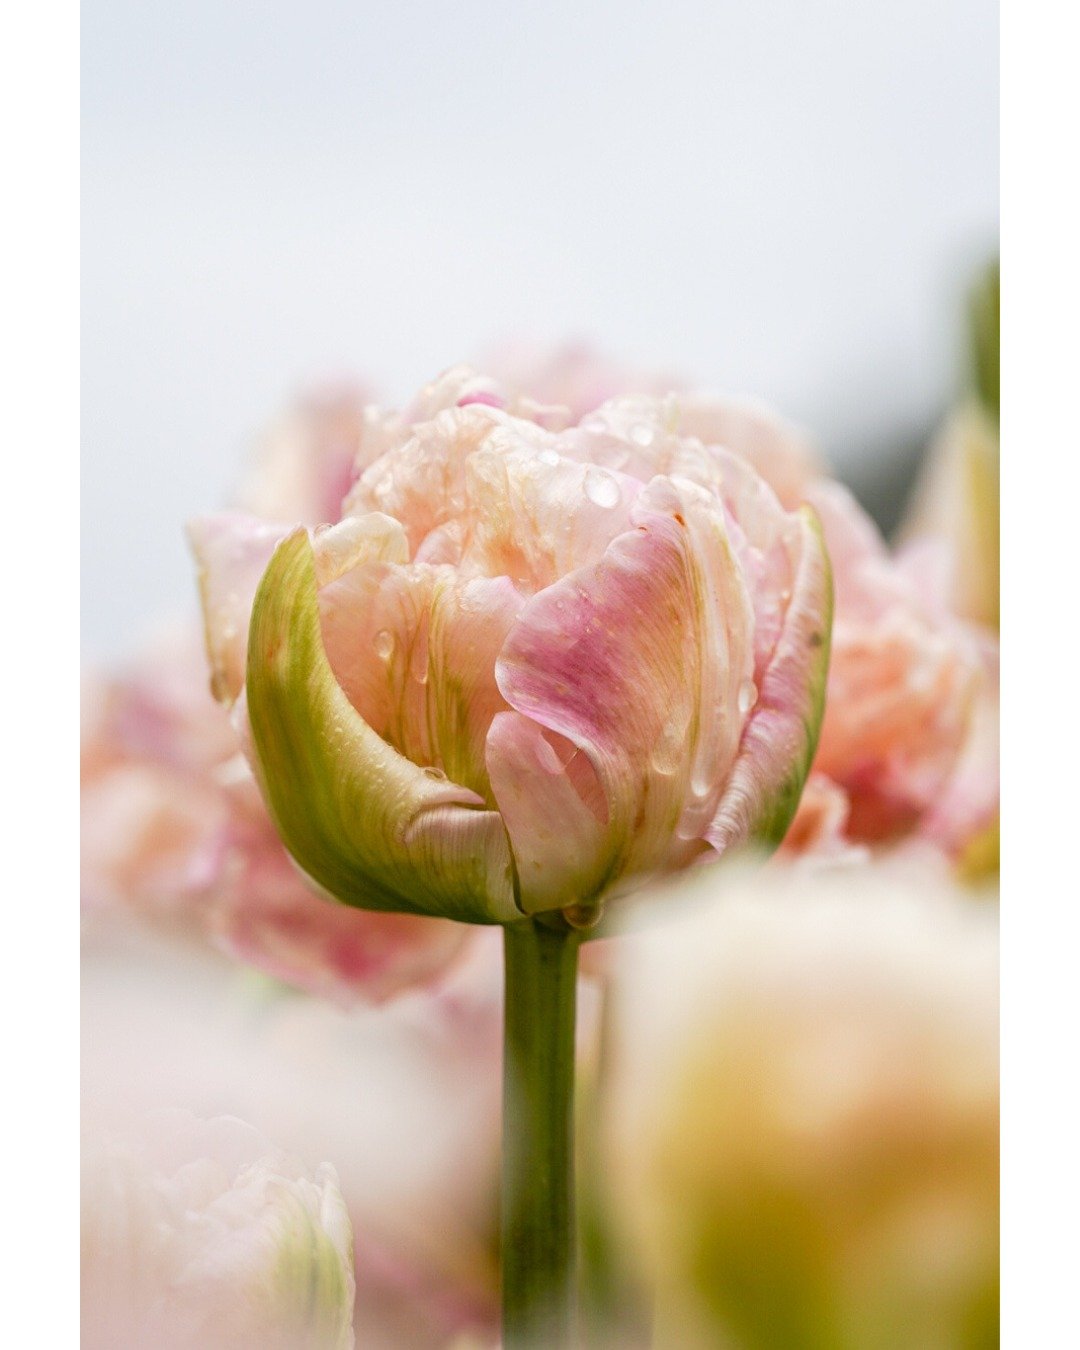 Soms is even wat anders fotograferen precies wat je nodig hebt. 🌷💧
Deze prachtige tulp fotografeerde ik vorig jaar bij the Tulip Experience Amsterdam met Roze Bunker. Wat is jouw tweede favoriete onderwerp om te fotograferen?

#tulips #tulipsamster